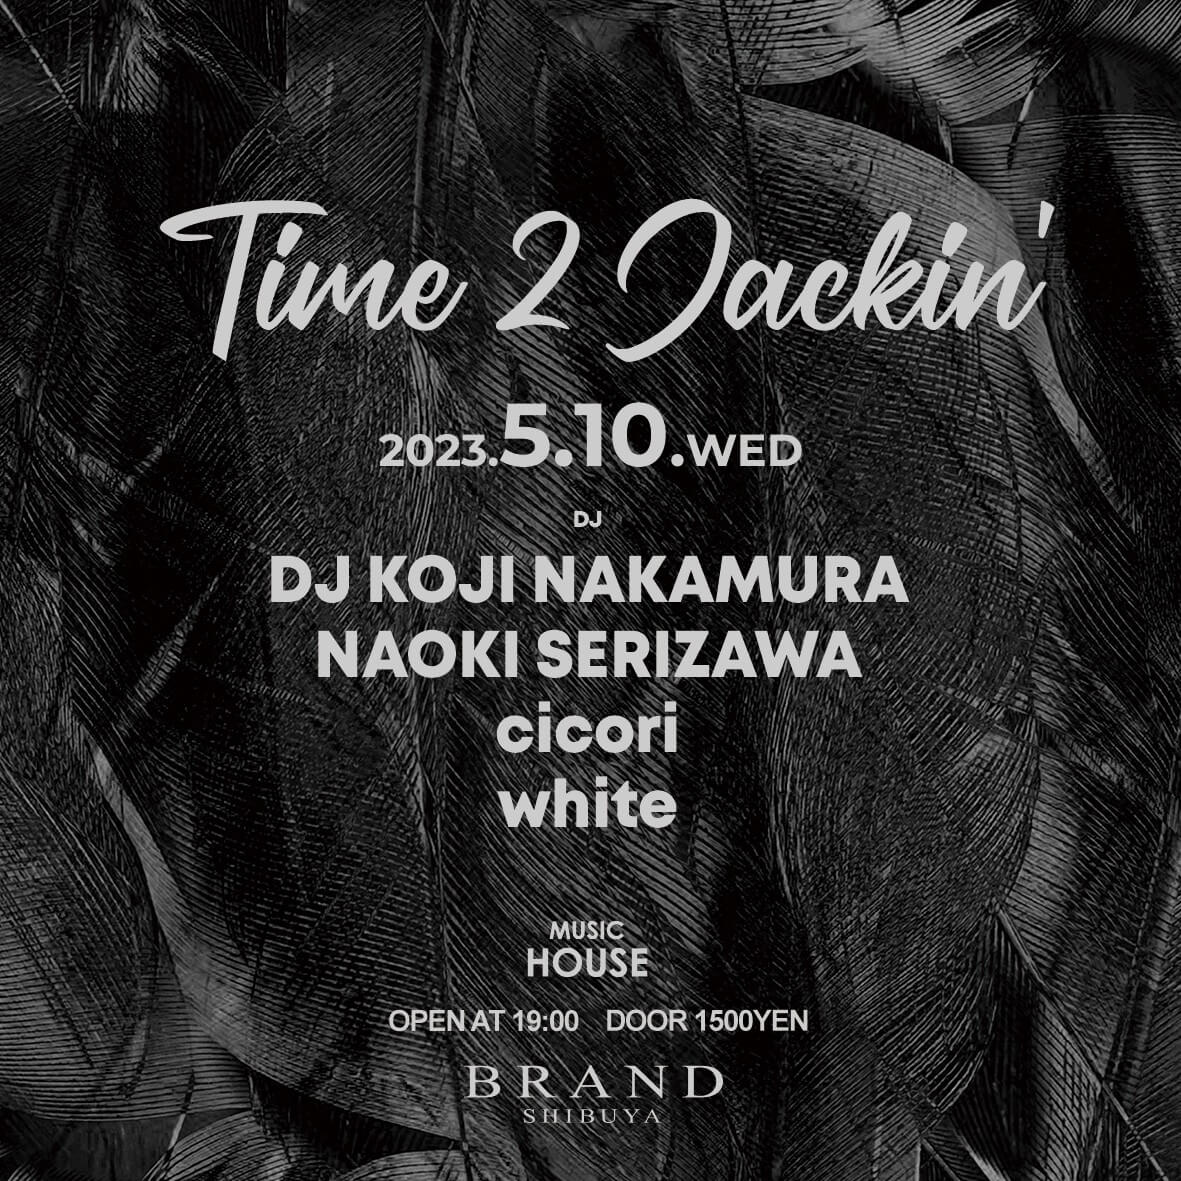 Time 2 Jackin 2023年05月10日（水曜日）に渋谷 クラブのBRAND SHIBUYAで開催されるHOUSEイベント